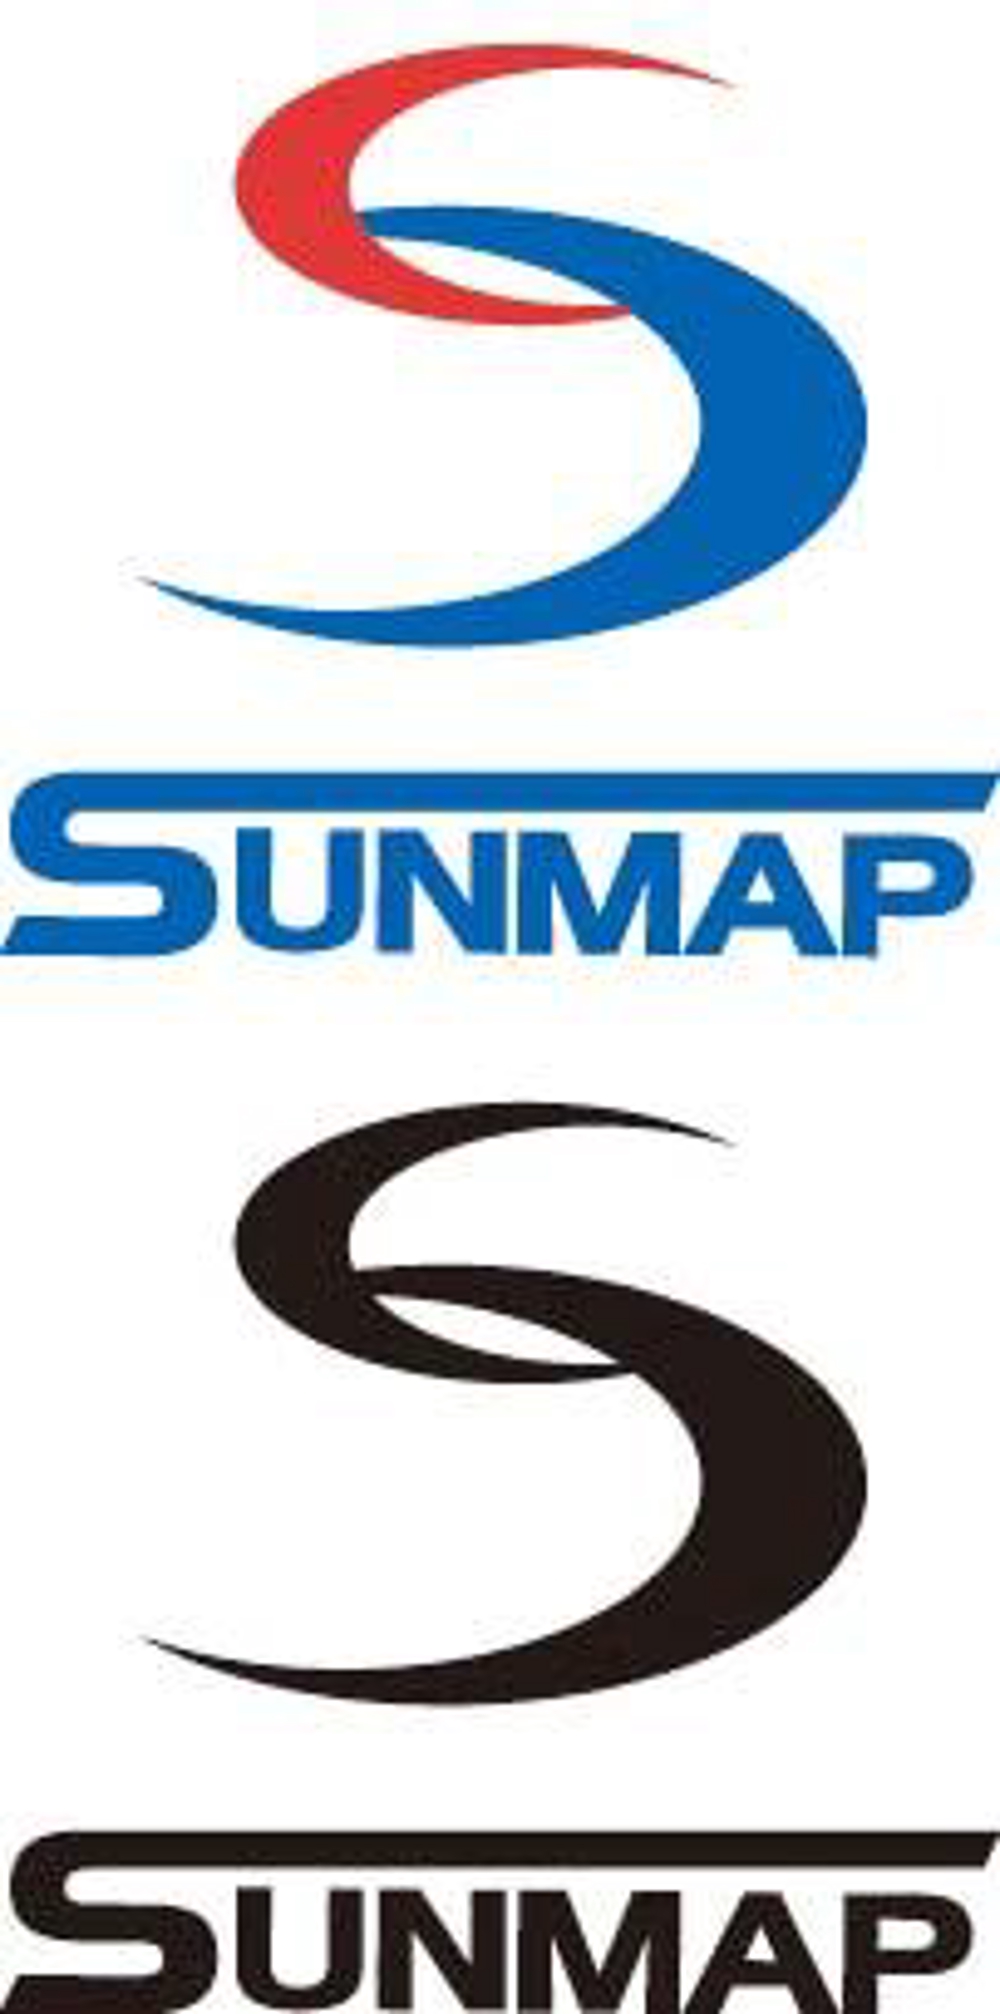 sunmap02.jpg